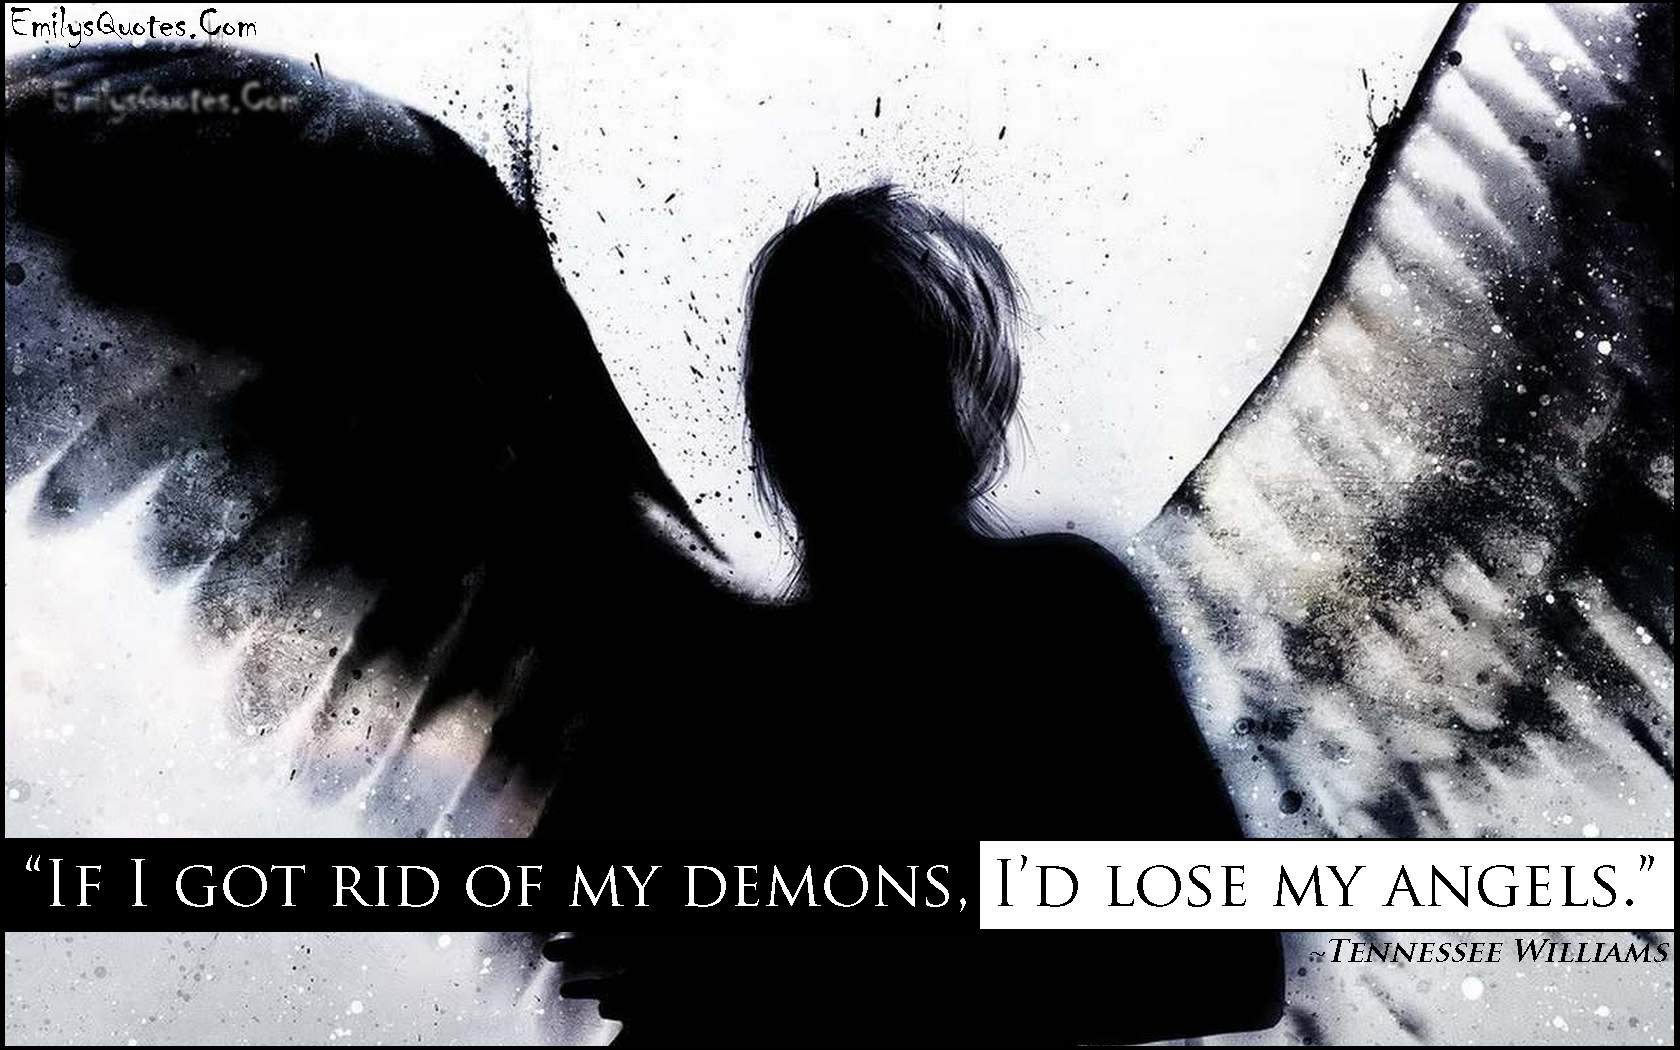 If I got rid of my demons, I’d lose my angels